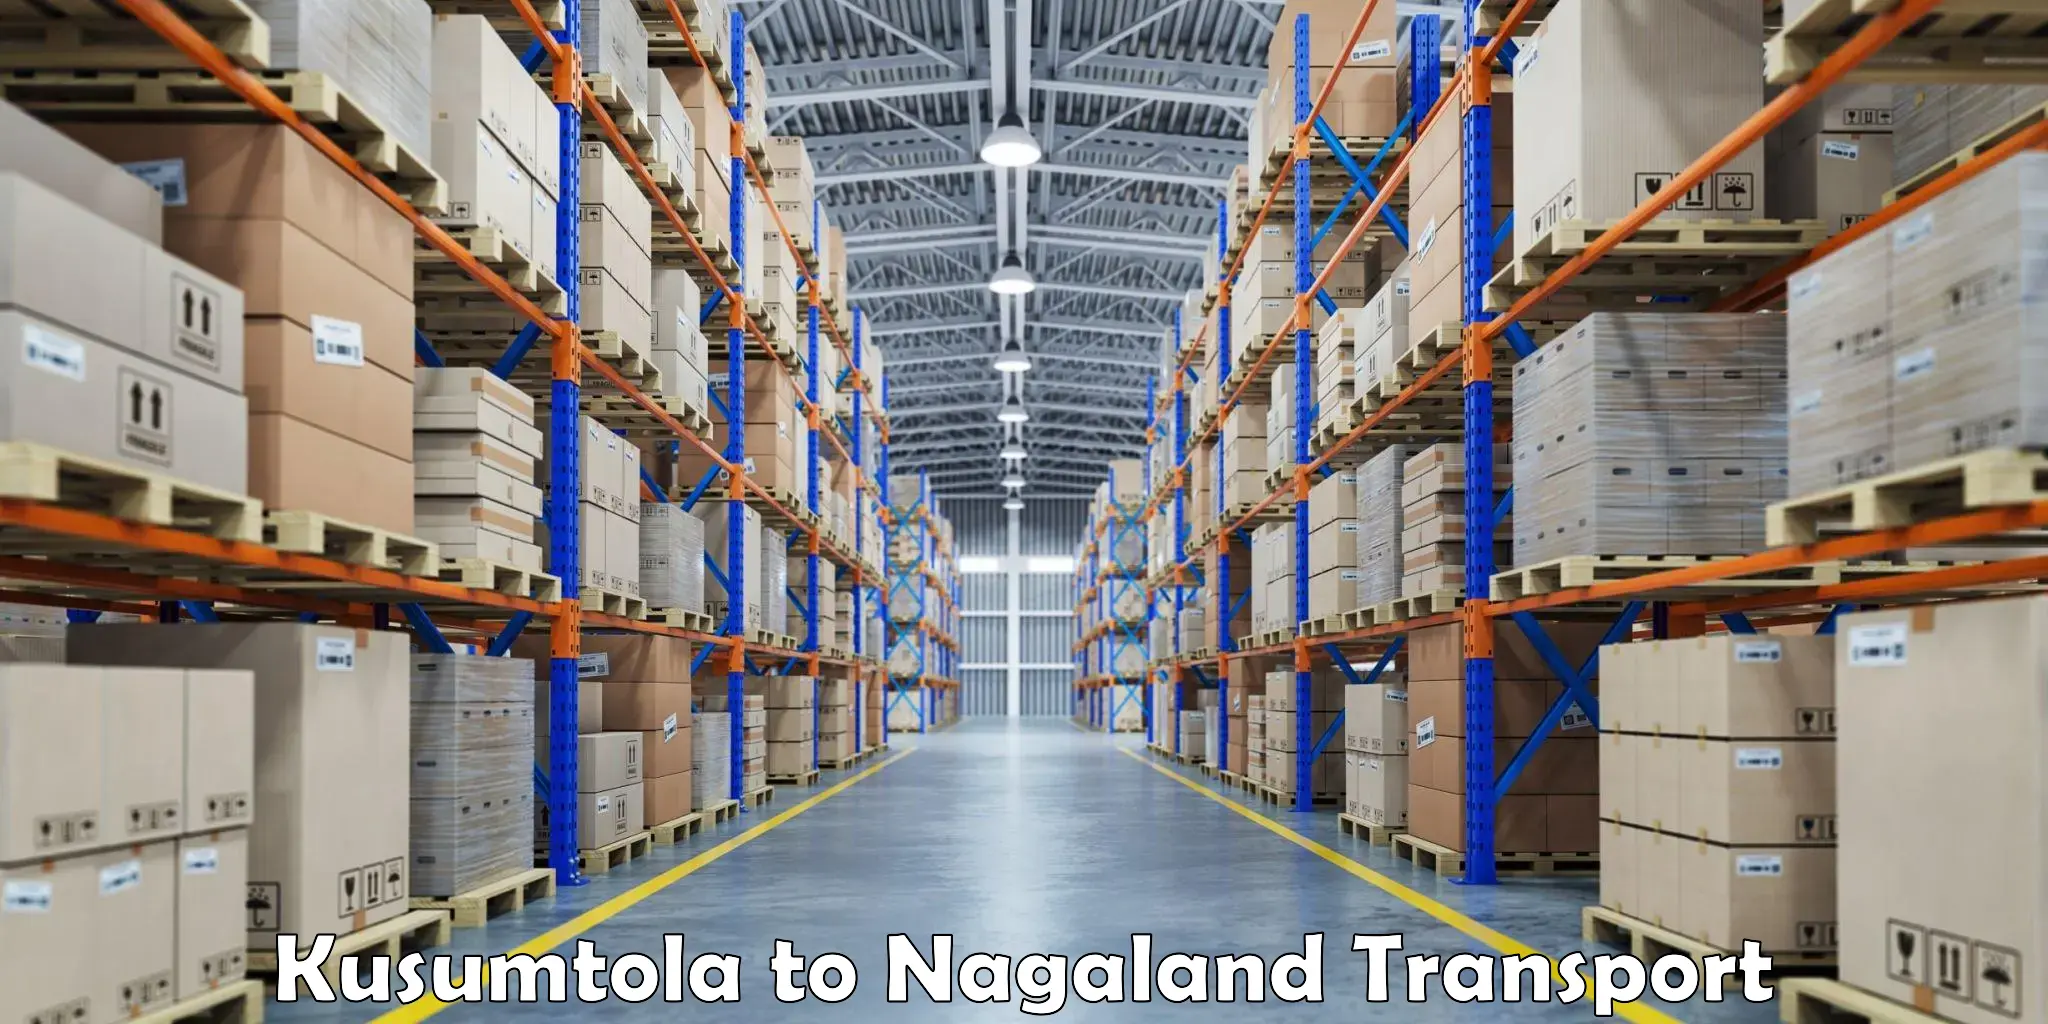 Lorry transport service Kusumtola to NIT Nagaland